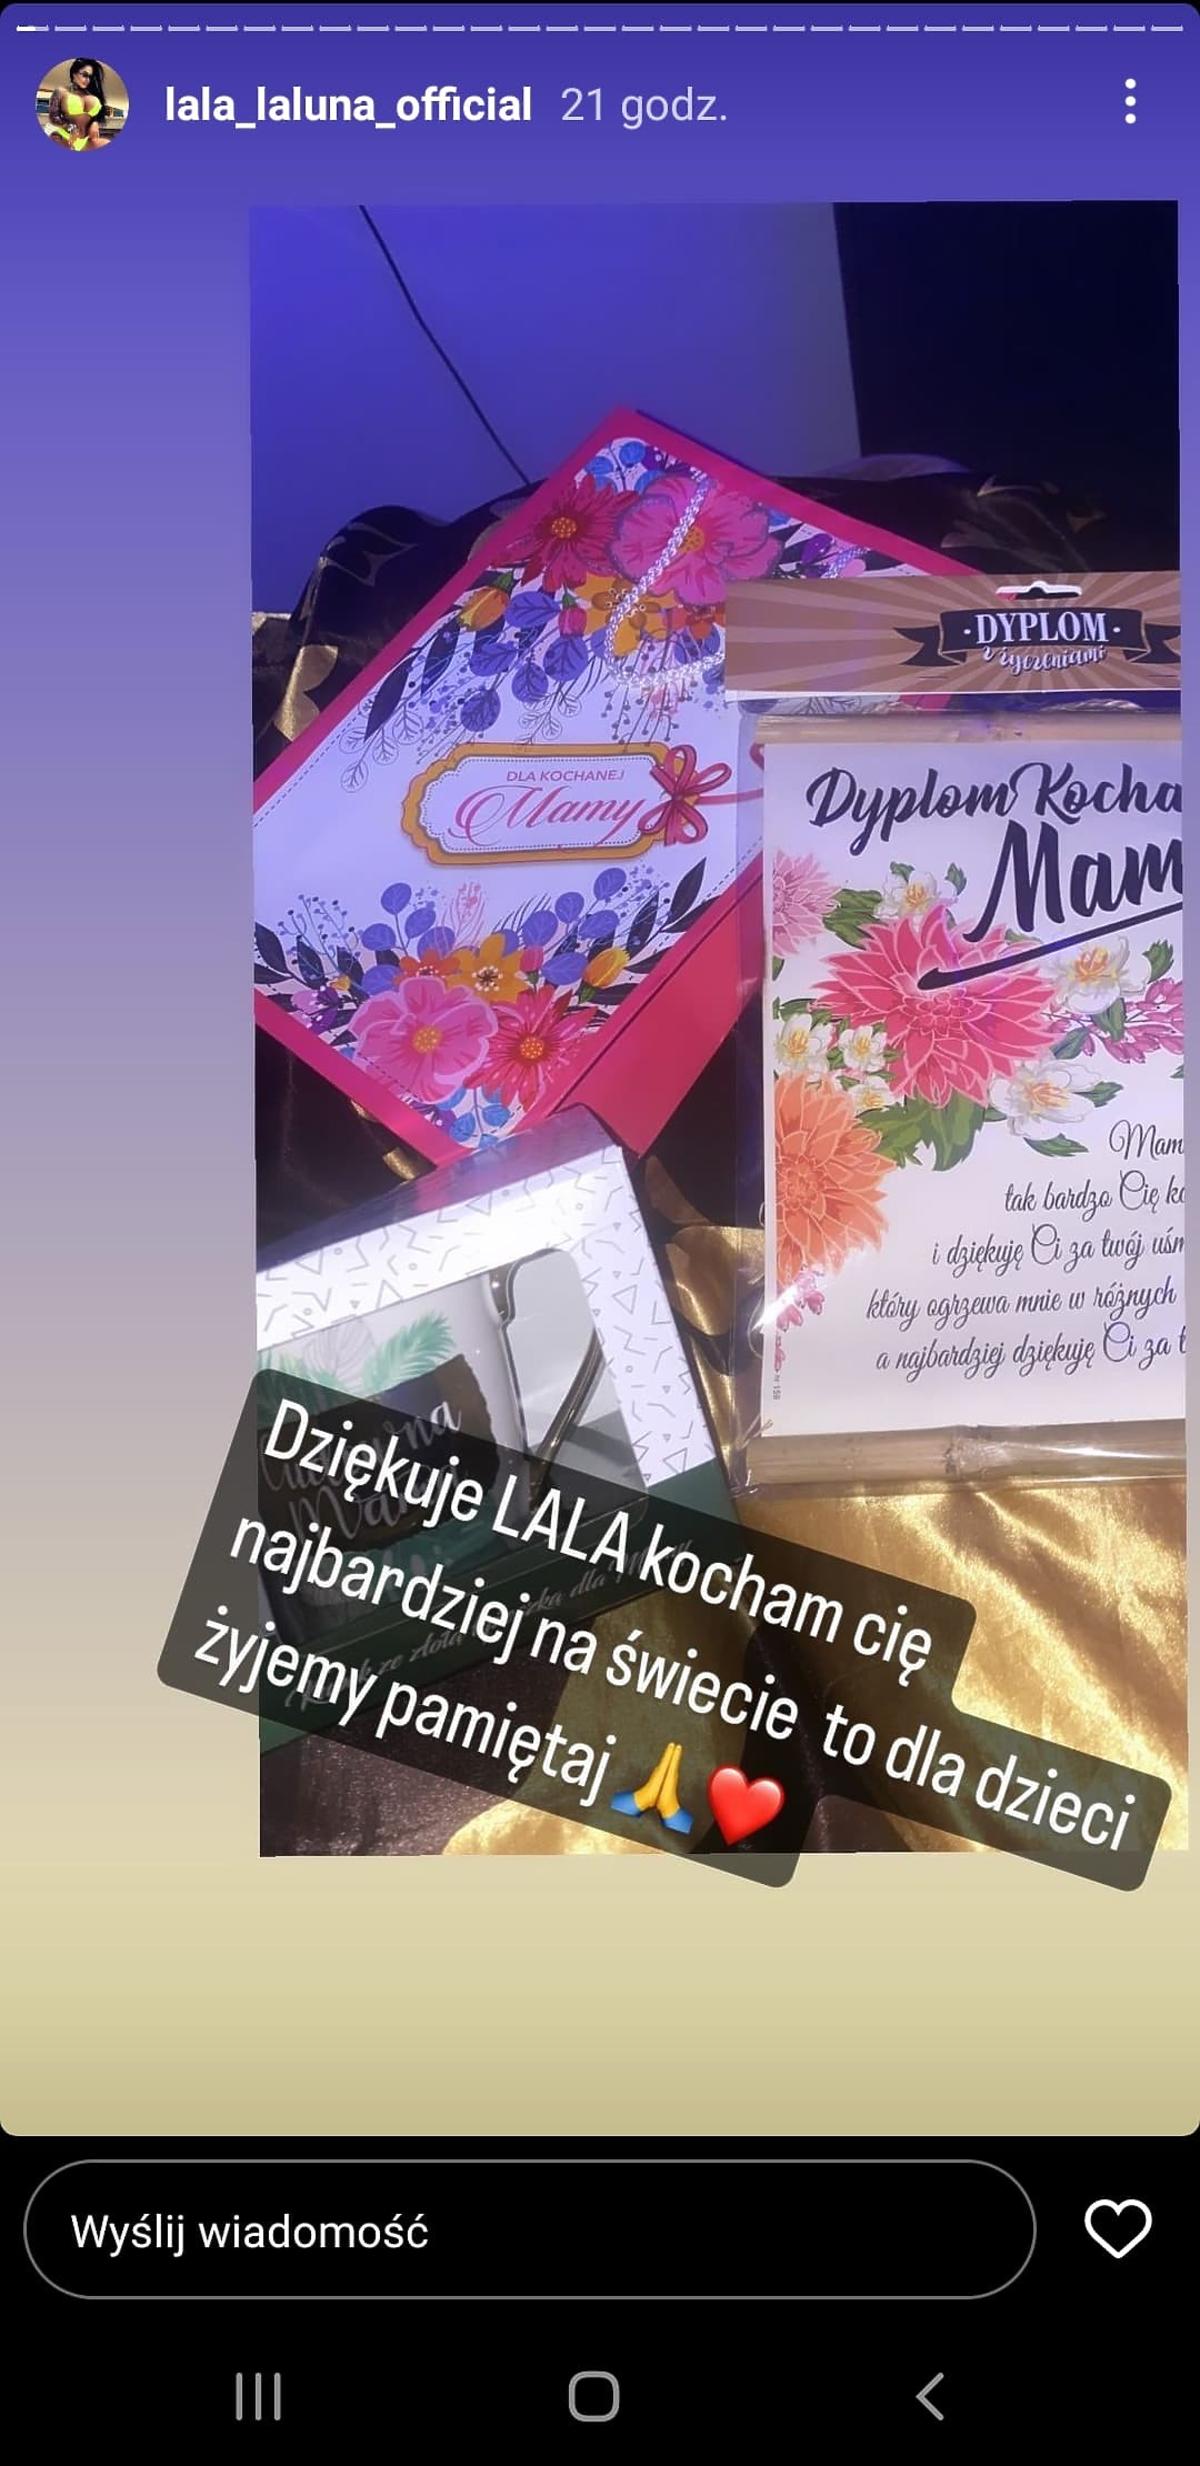 Królowe życia: Laluna pokazała prezenty od córki